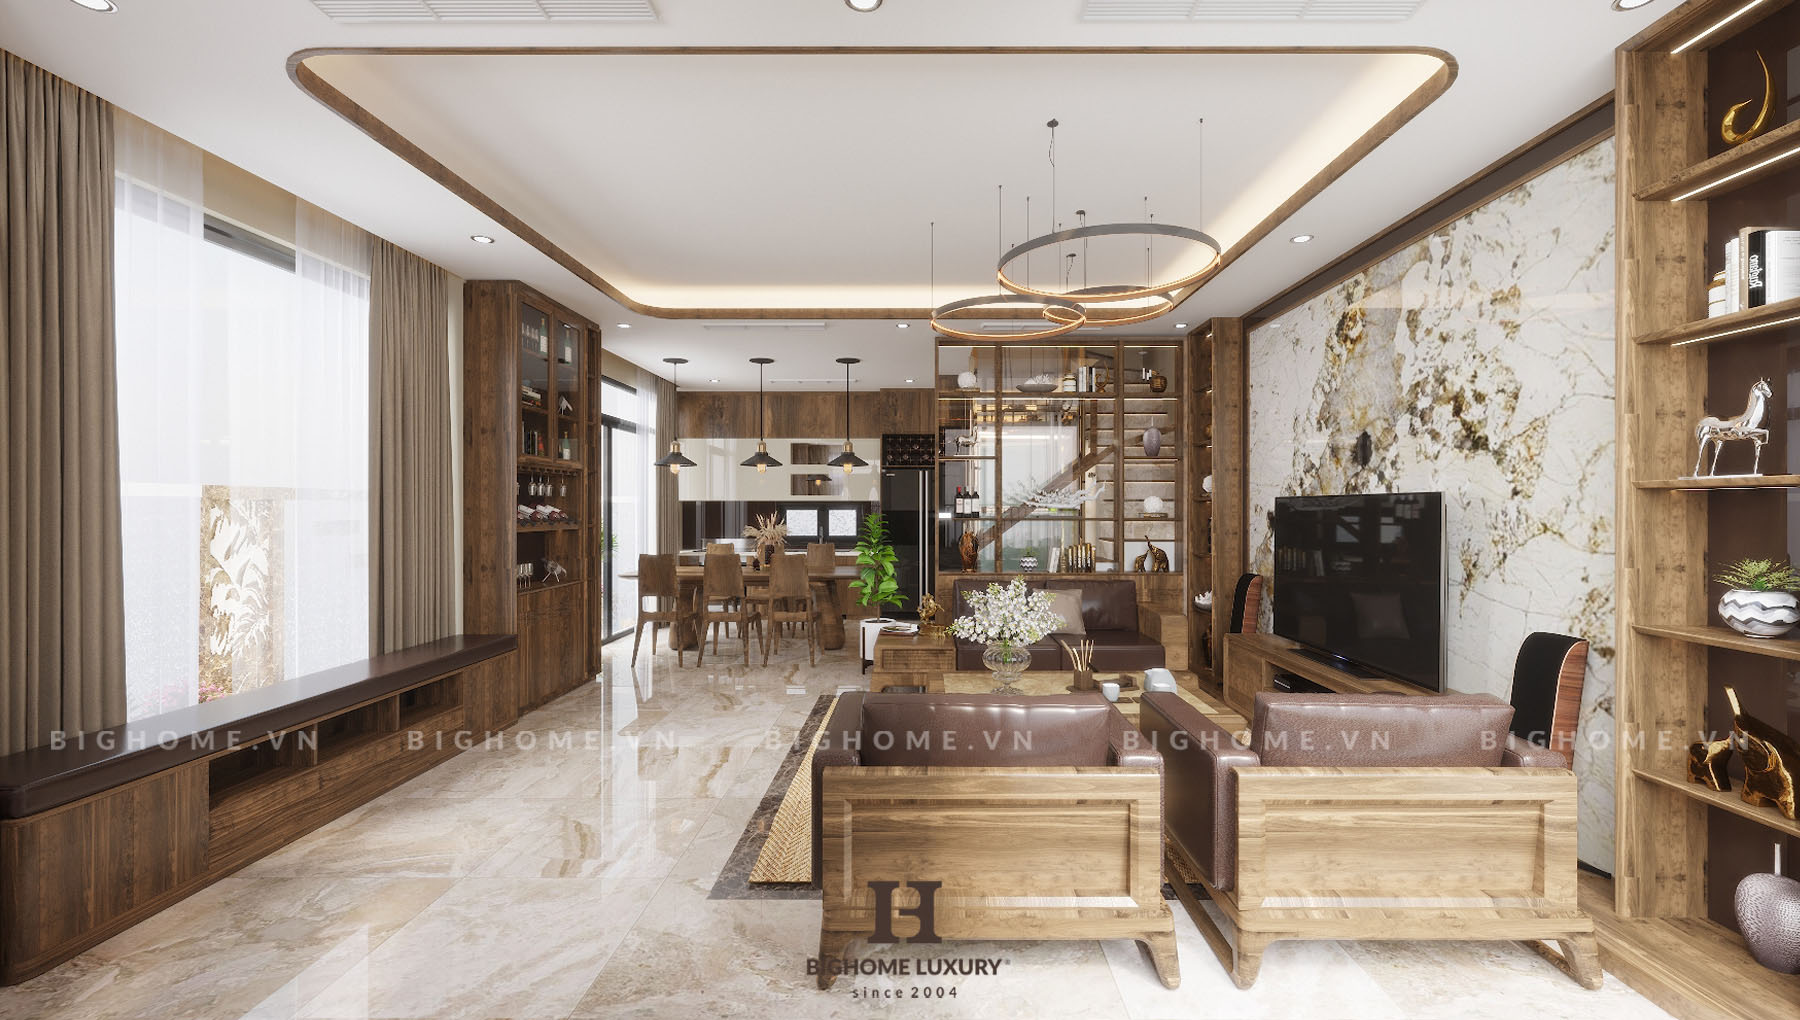 Thiết kế nội thất phòng khách nổi bật với mảng tường chính, kệ tivi làm bằng đá thạch anh cao cấp kết hợp chất liệu quý là gỗ óc chó 